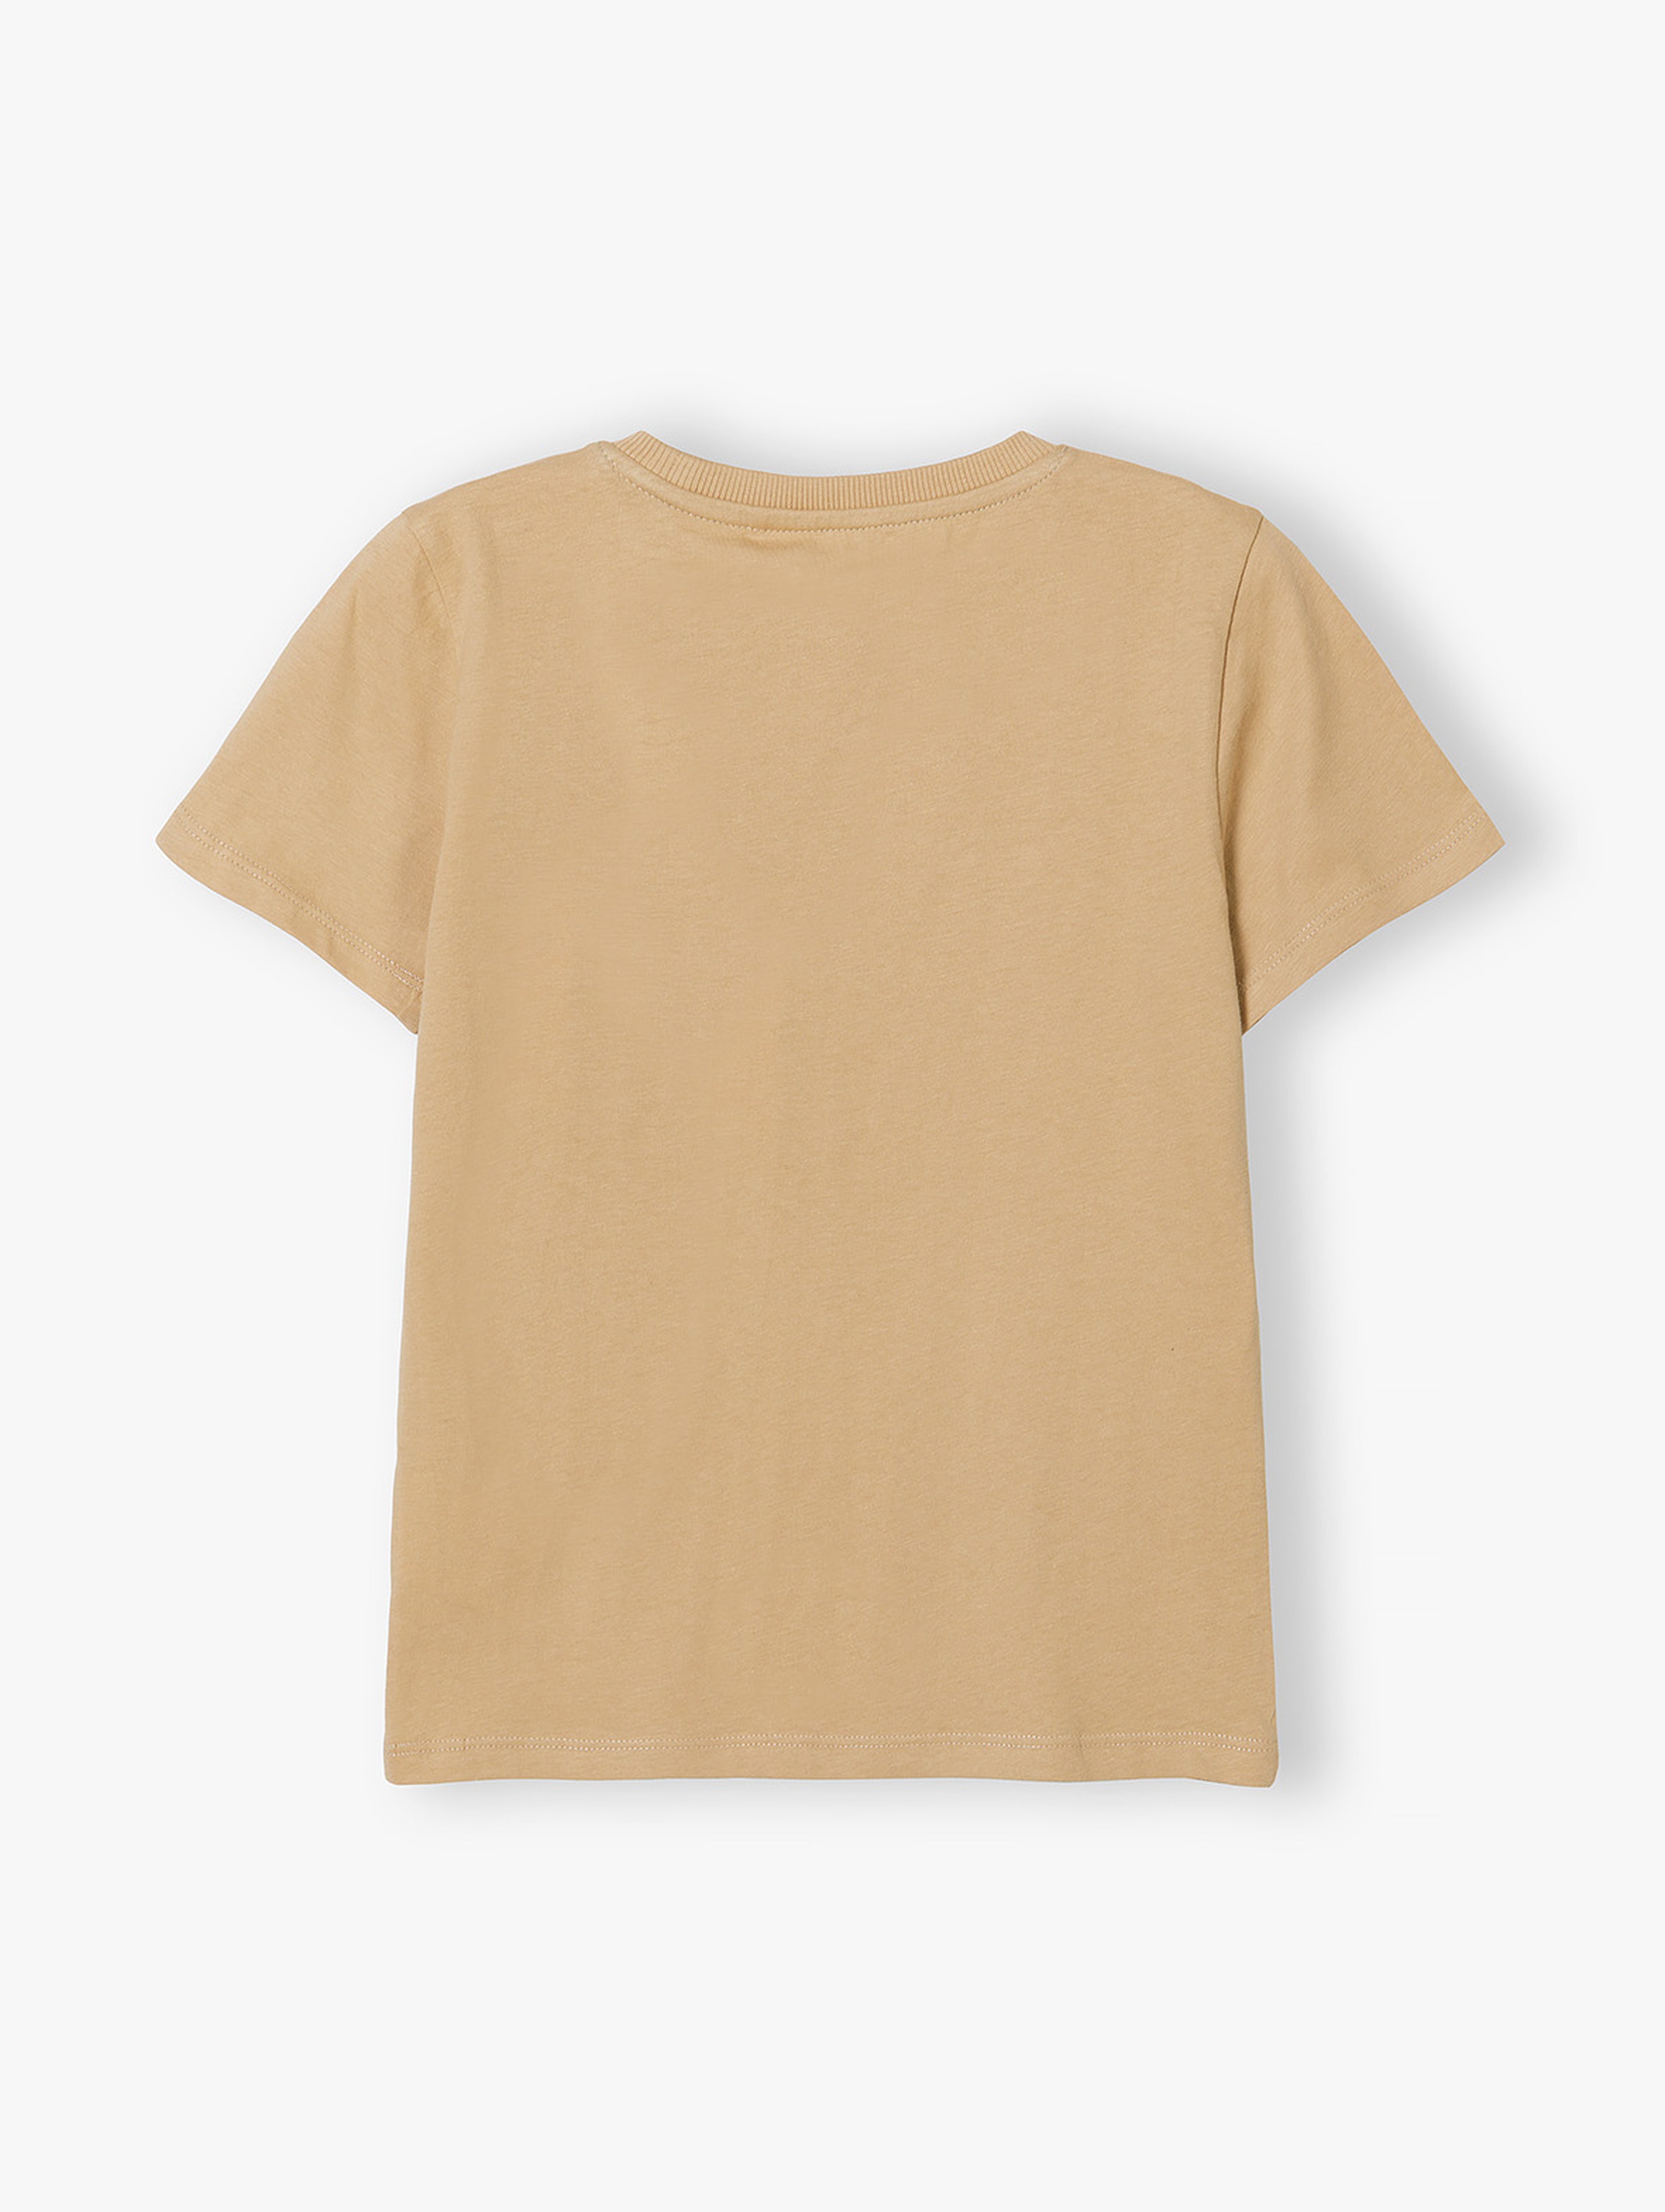 Beżowy t-shirt dla chłopca bawełniany z nadrukiem